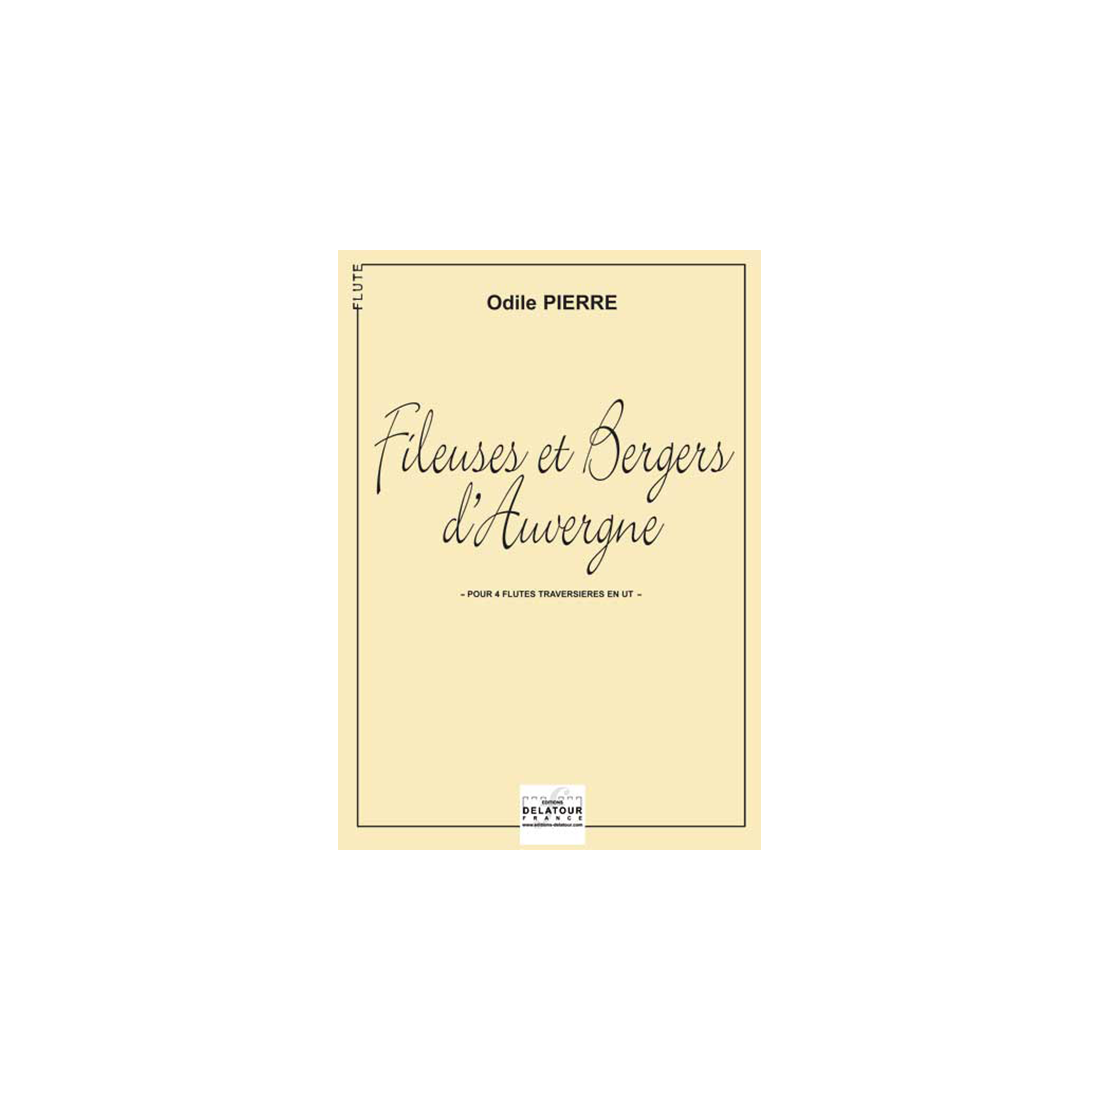 Fileuses et bergers d'Auvergne for 4 flutes